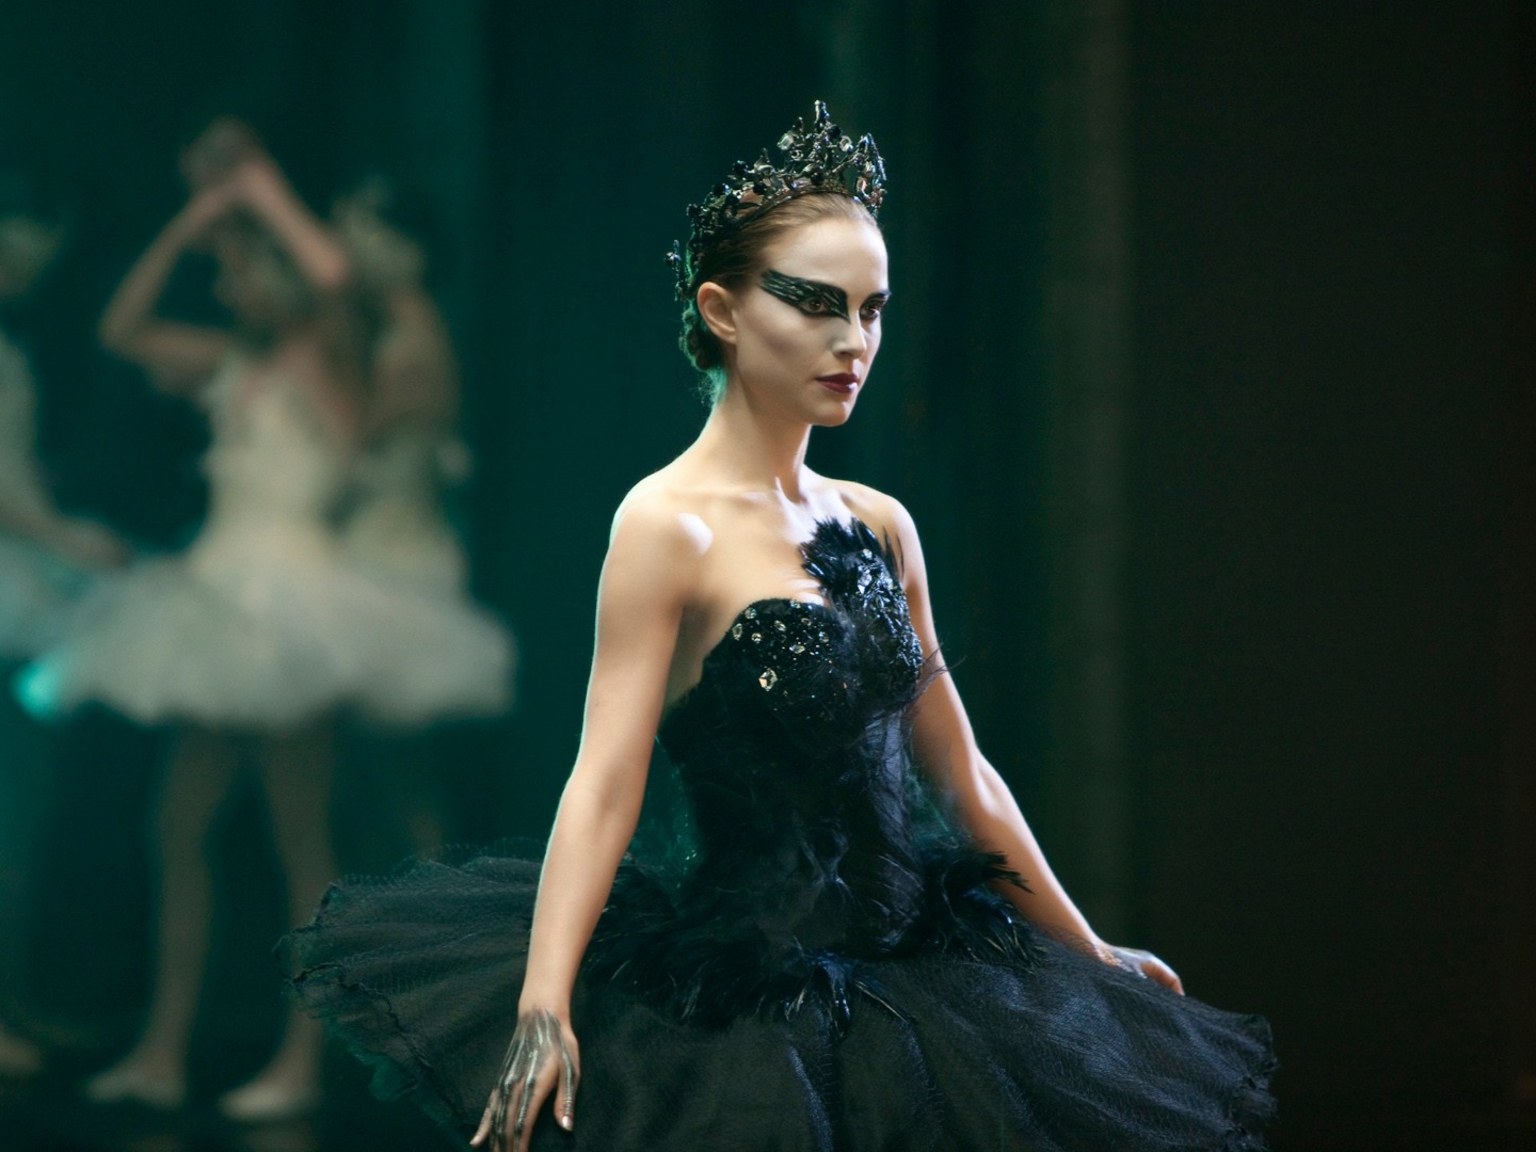 Kollisionskursus spiselige fornuft Black Swan: A Psychological Thriller About Dancing - Modern Neon Media